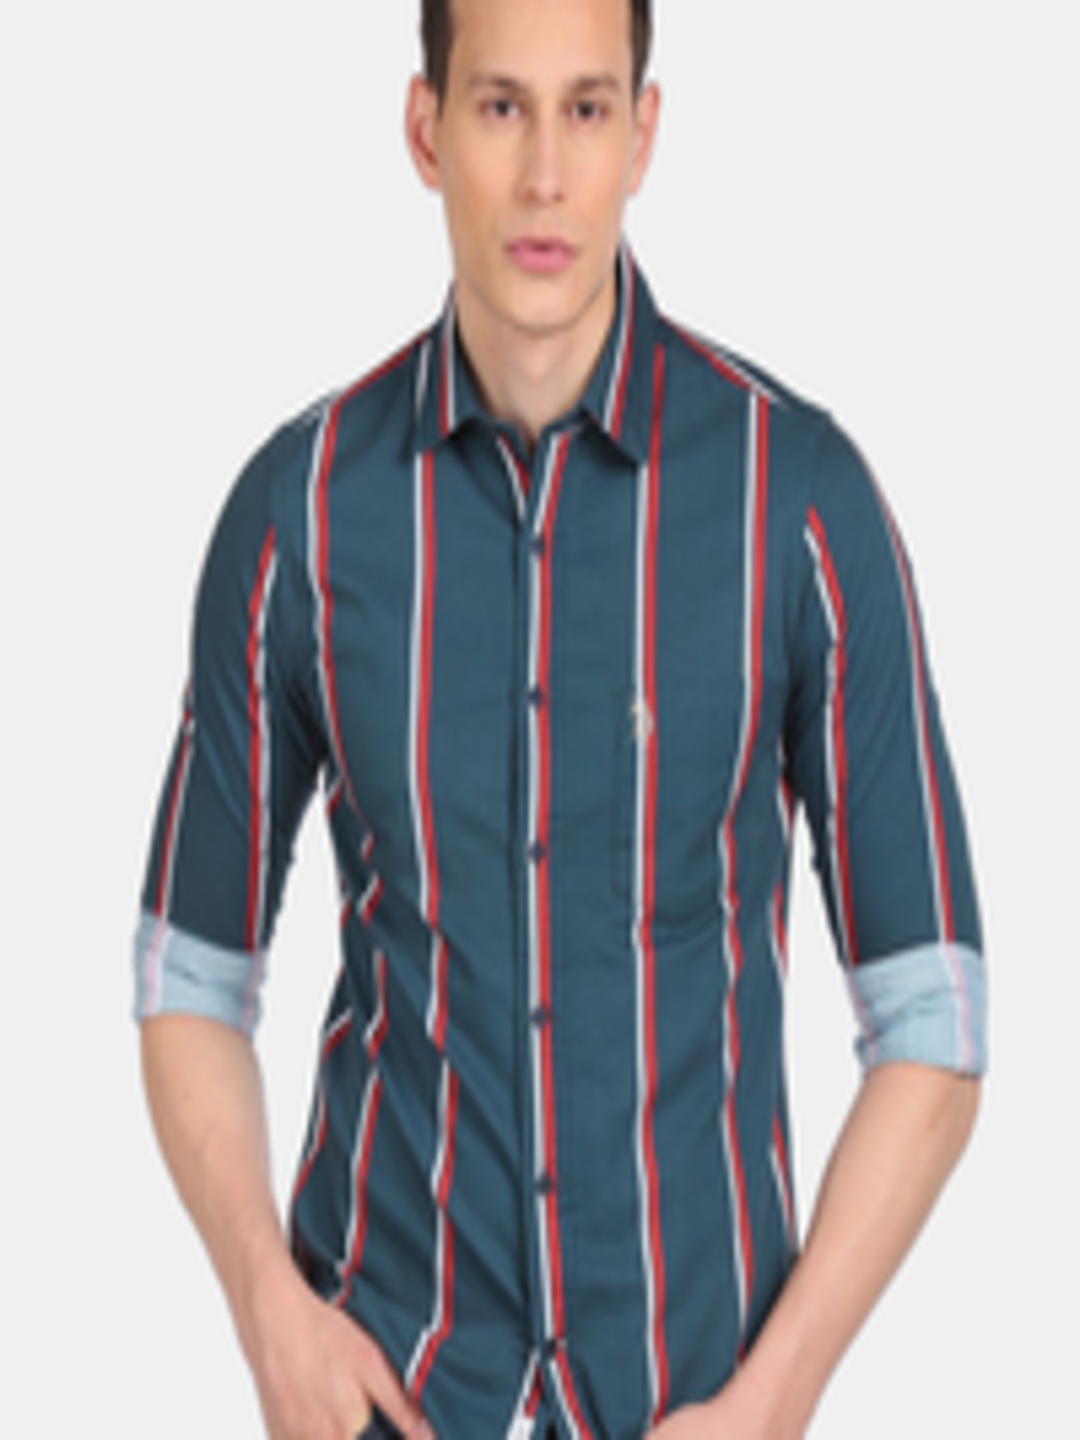 Buy U S Polo Assn Men Teal Striped Casual Shirt - Shirts for Men